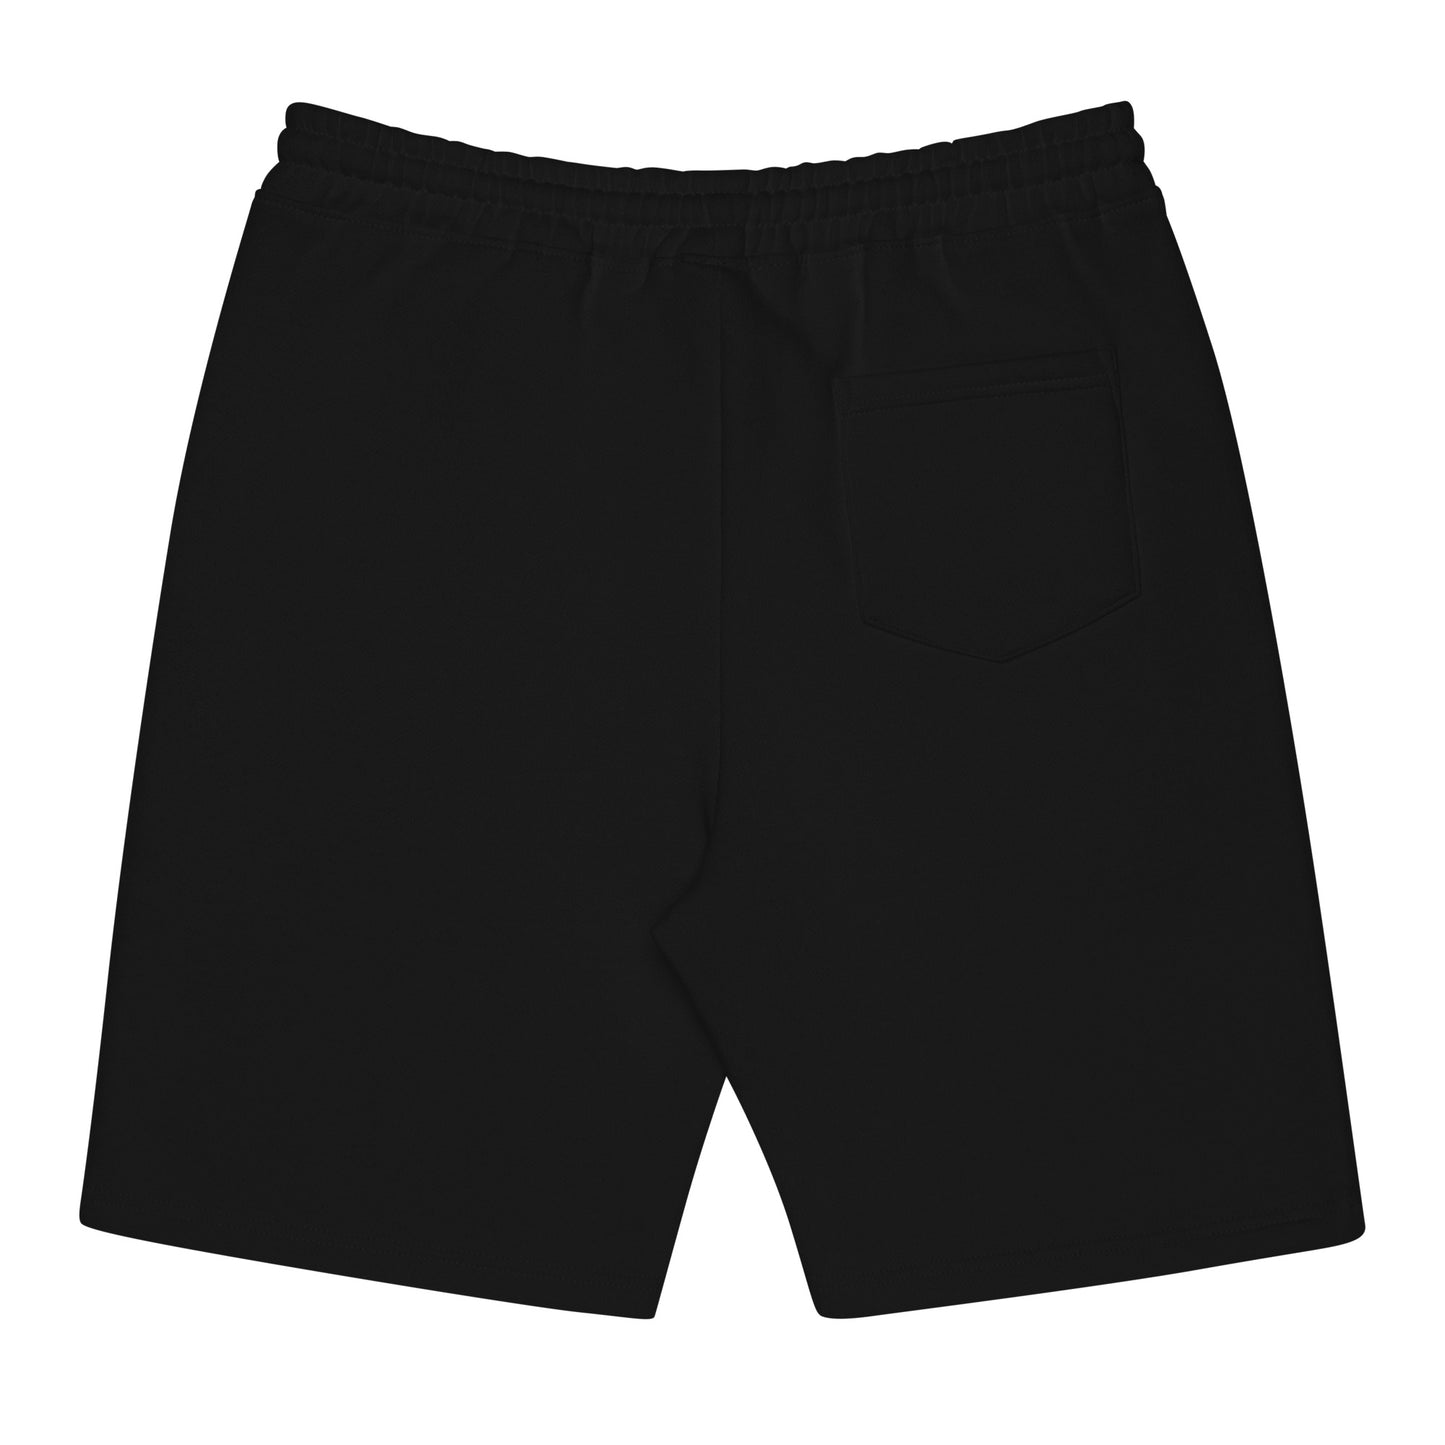 PHVRS Men's fleece shorts